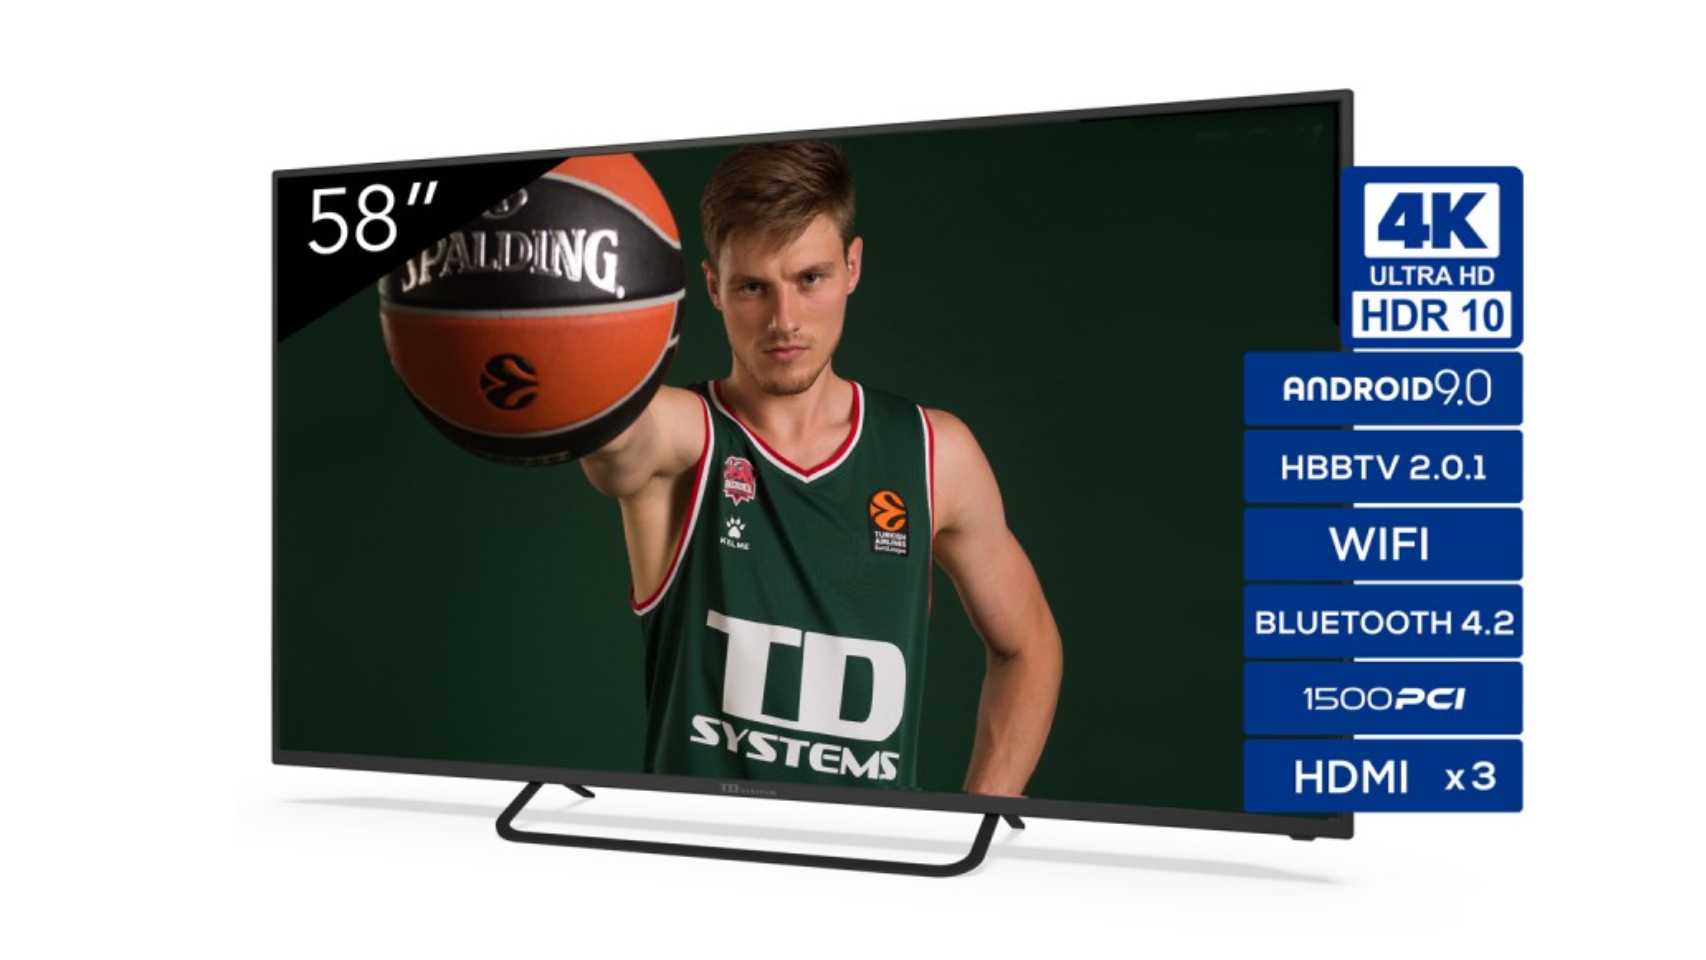 Así es la Smart TV 4k de 58 pulgadas de TD Systems: HDR10, Android y un  precio de escándalo